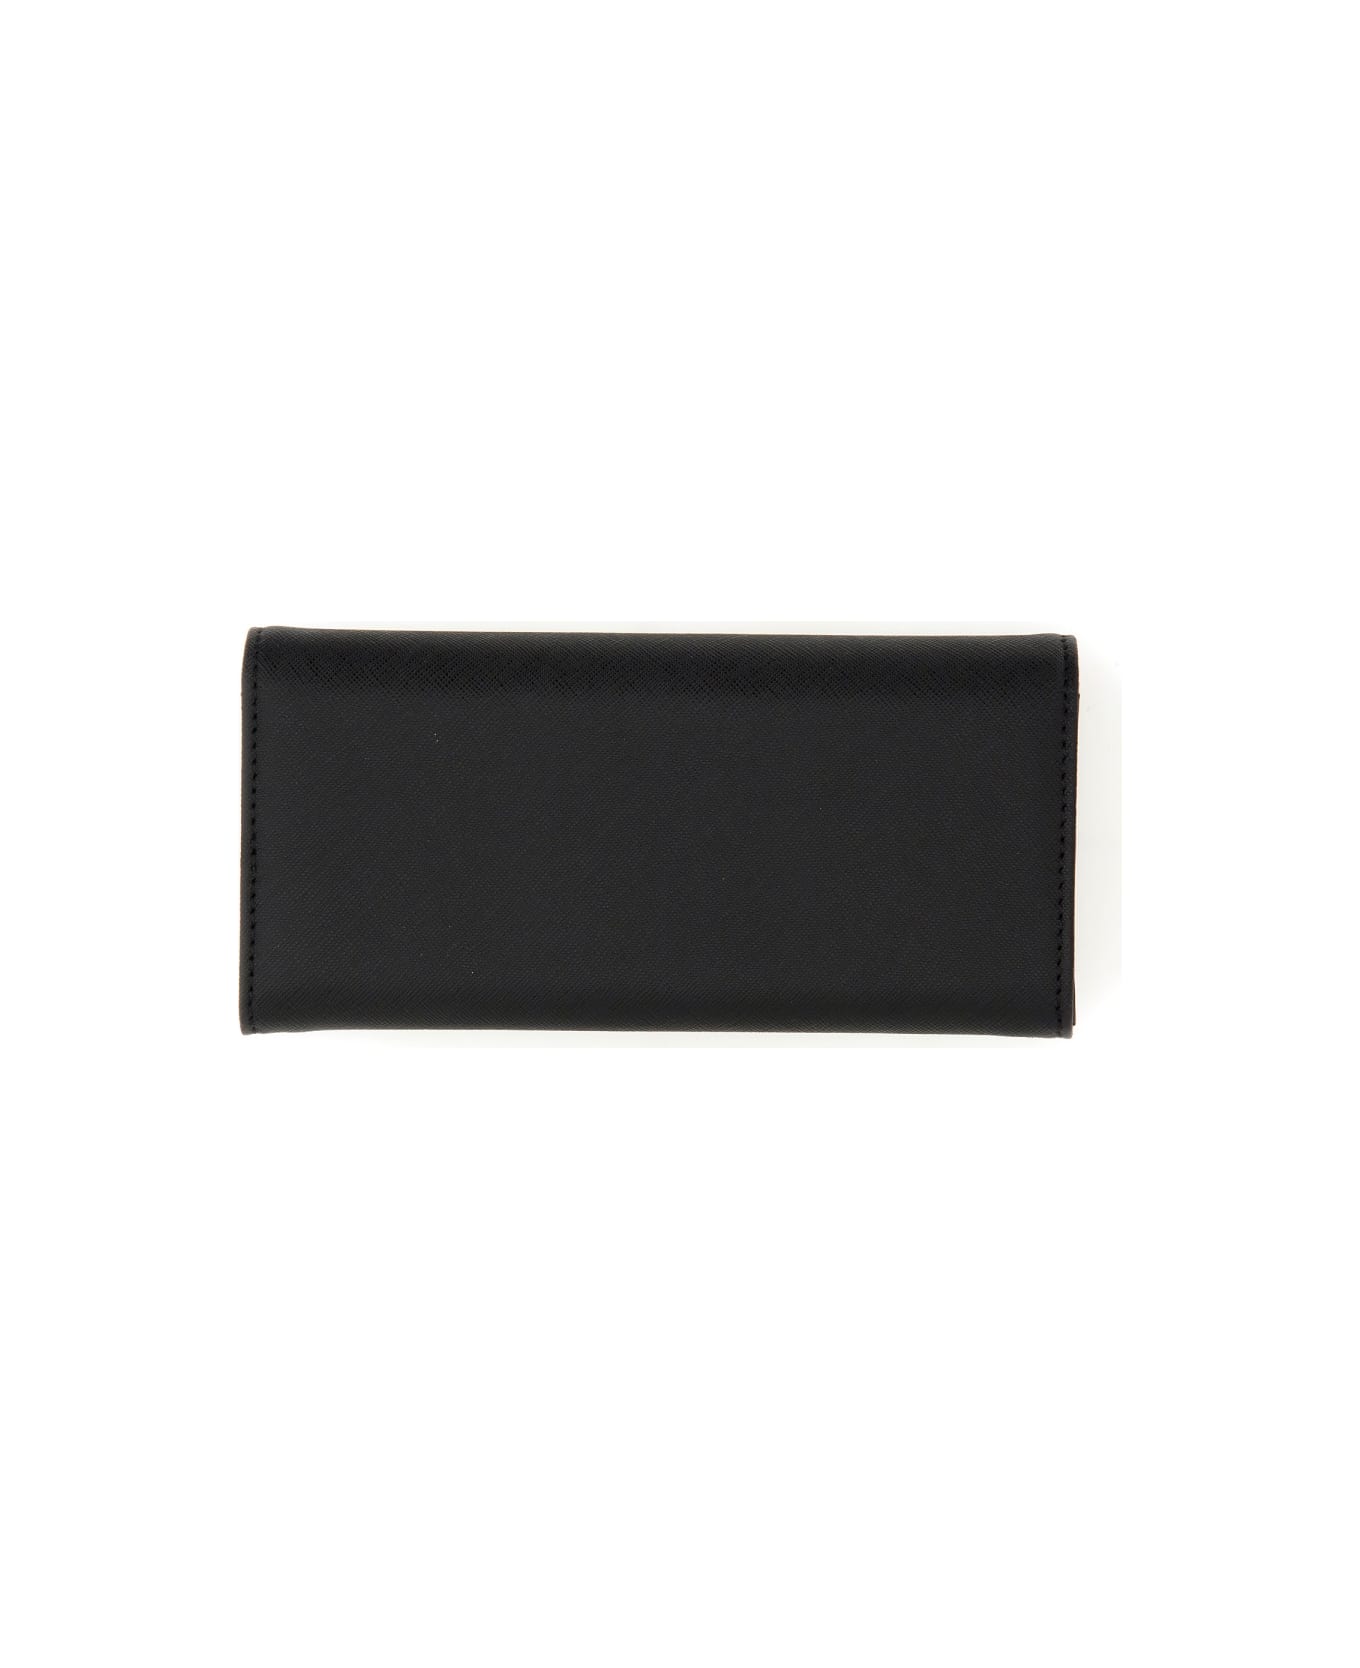 Vivienne Westwood Saffiano Classic Wallet - BLACK